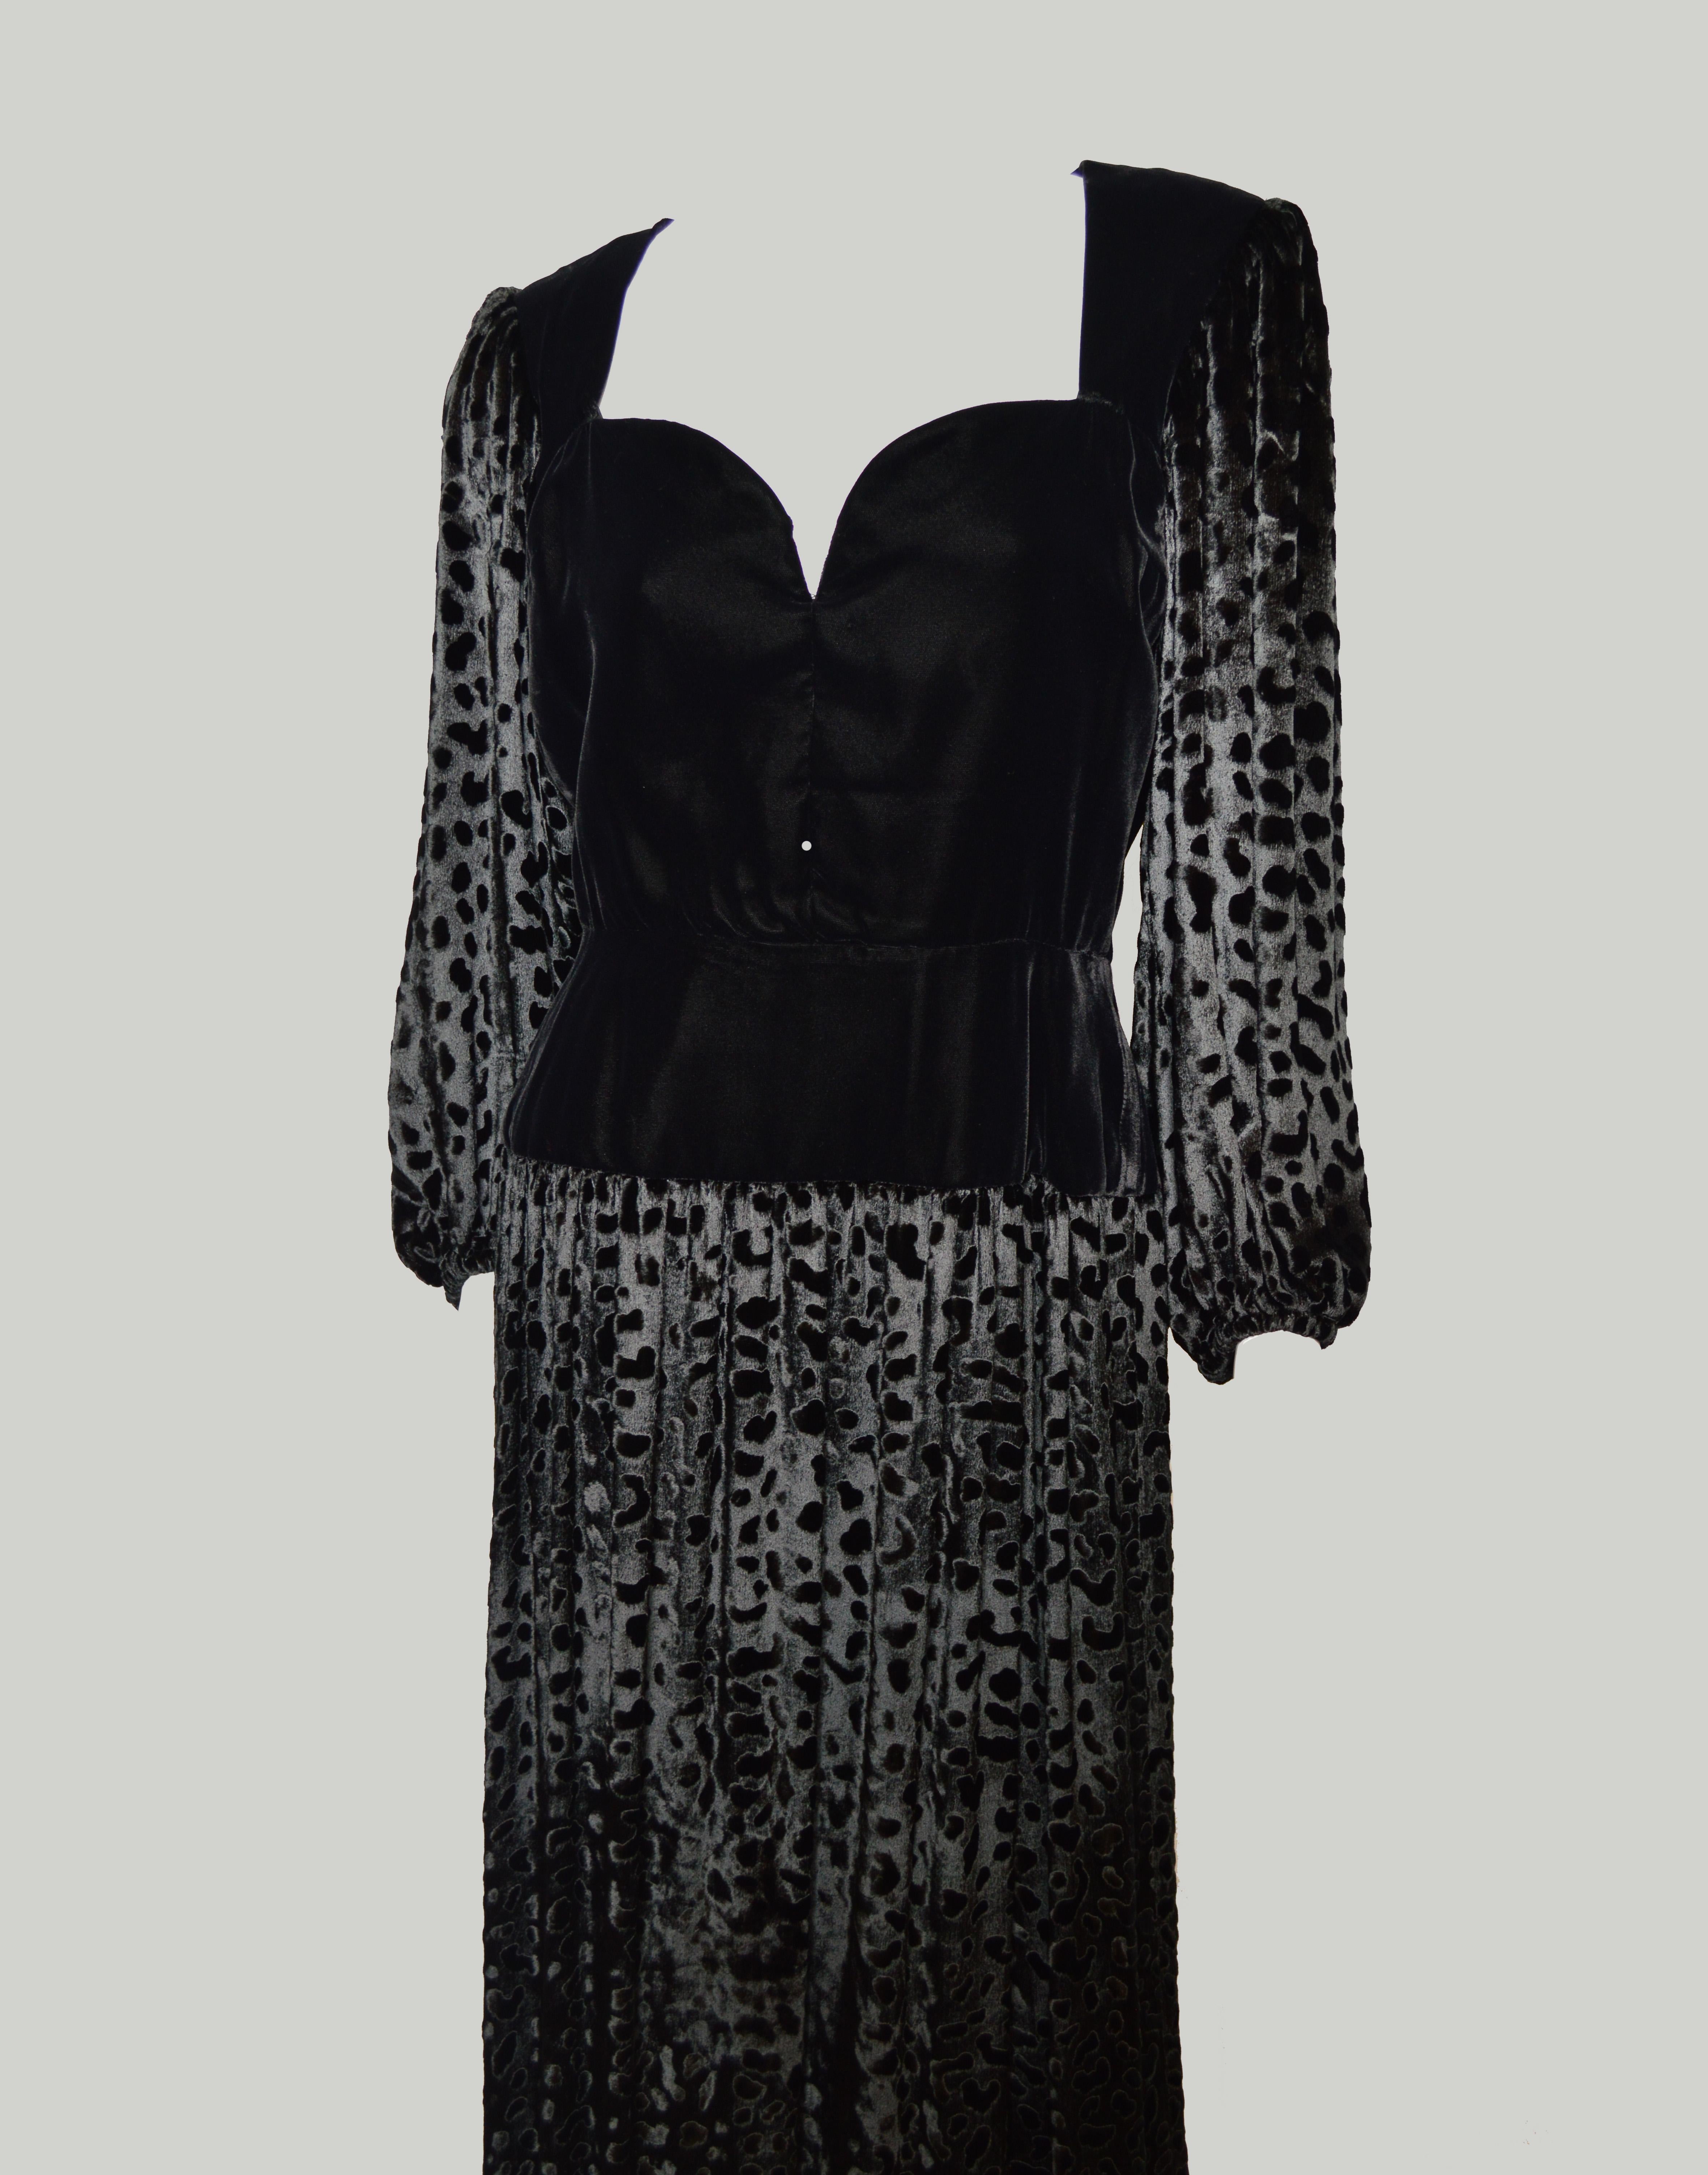 Ein exquisites Vintage Demi Couture Abendkleid aus den 1980er Jahren von Yves Saint Laurent. Wunderschön konstruiert mit vielen Details, von Hand verarbeitet, in einem prächtigen schwarzen Samt. In Maxilänge mit verdeckten Samtknöpfen und einem